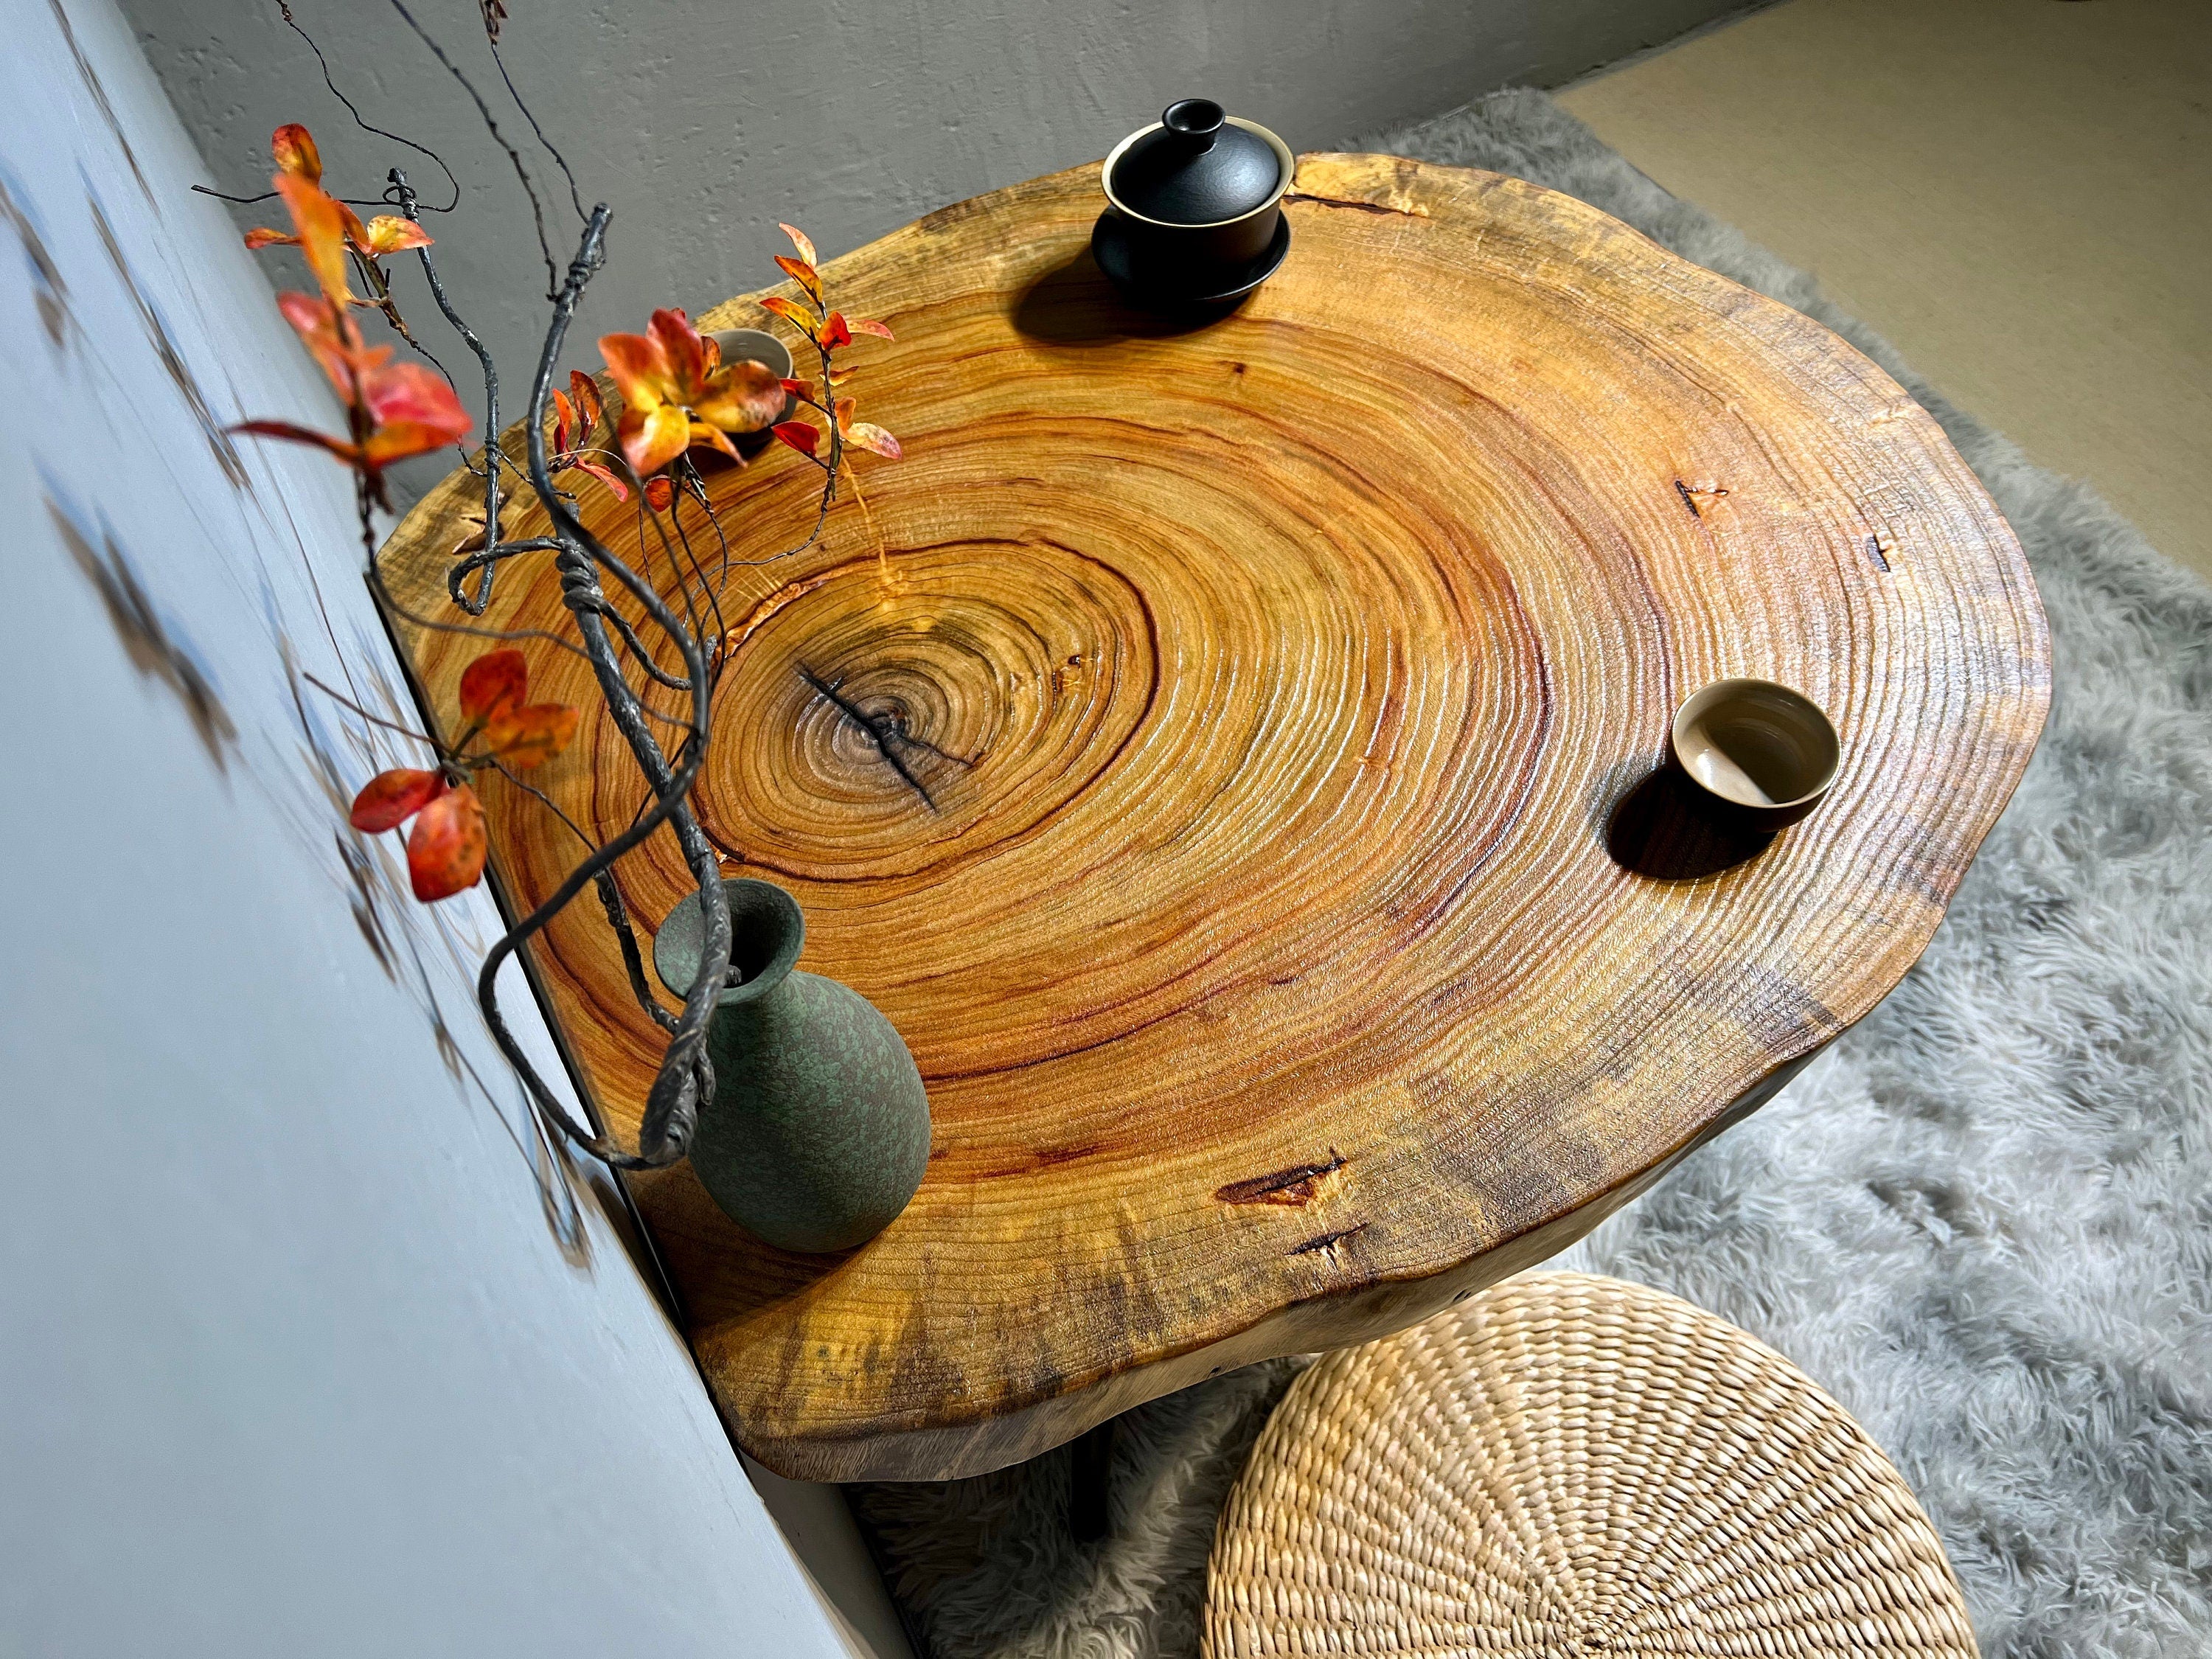 طاولة القهوة الخشبية ذات الحافة الحية، وطاولة خشب الزيتون، وطاولة القهوة الخشبية عالية الجودة